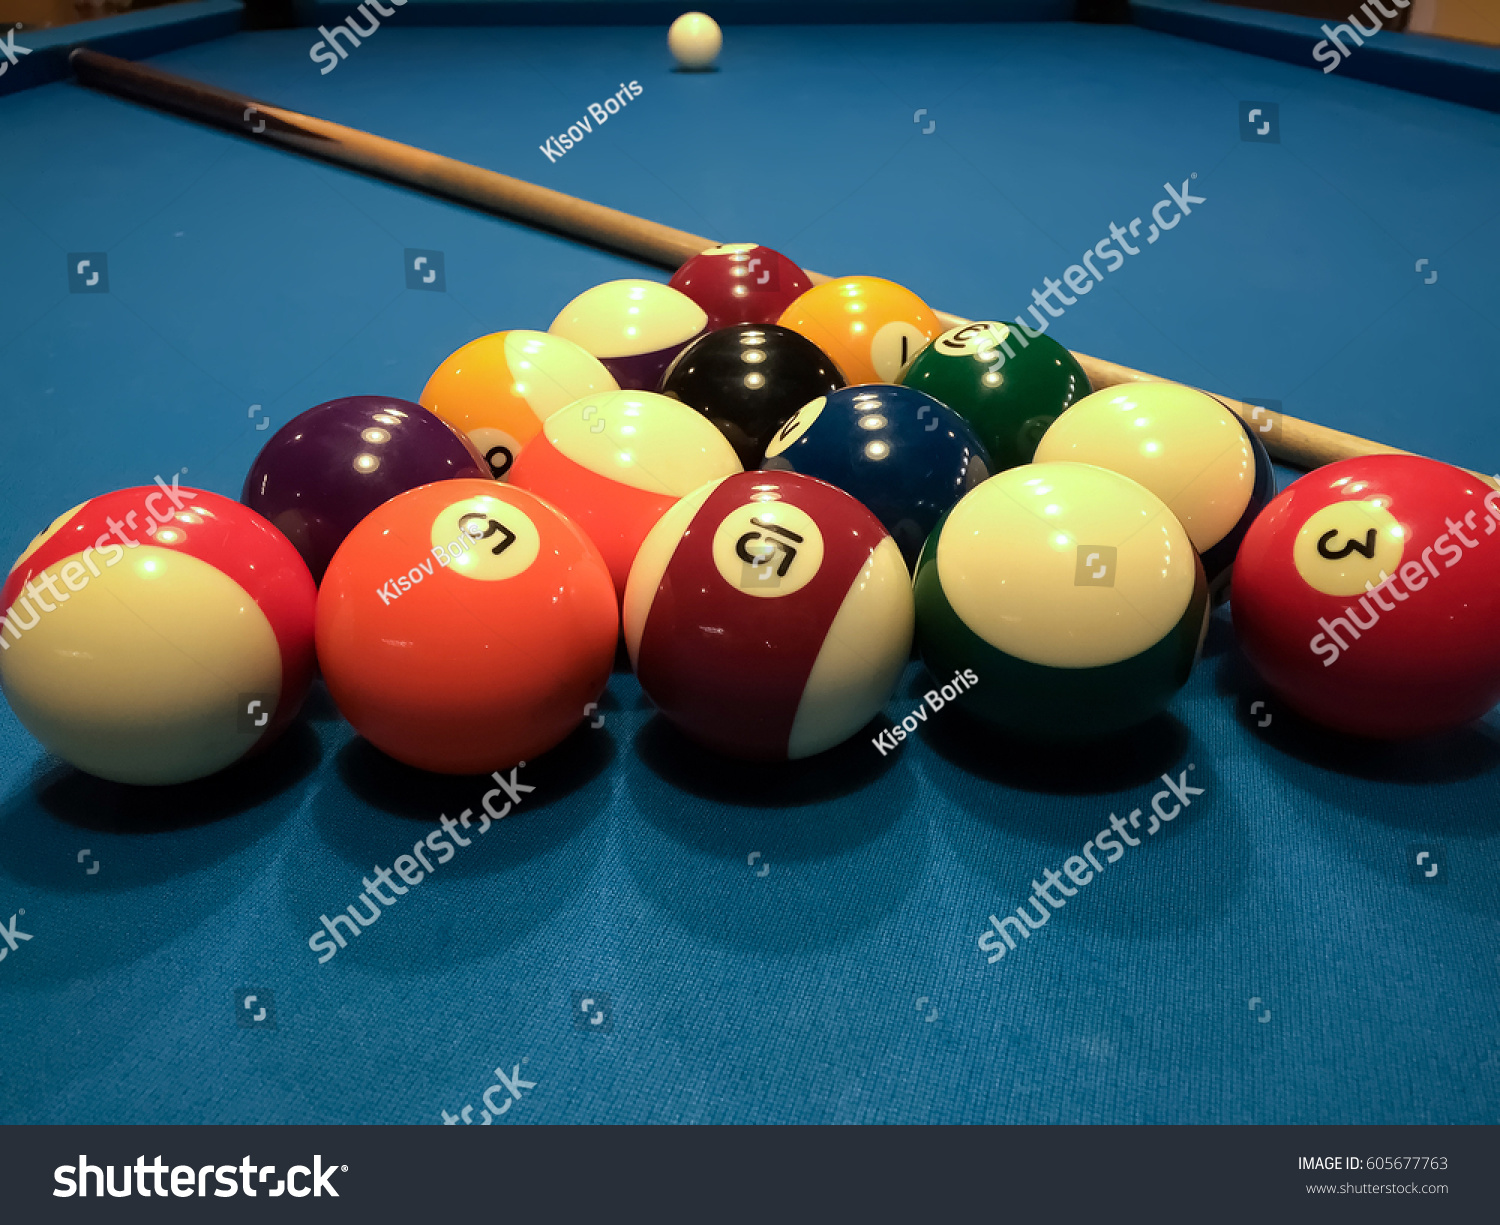 Colorful Billiards Balls Billiard Ball Blue Stock Photo 605677763